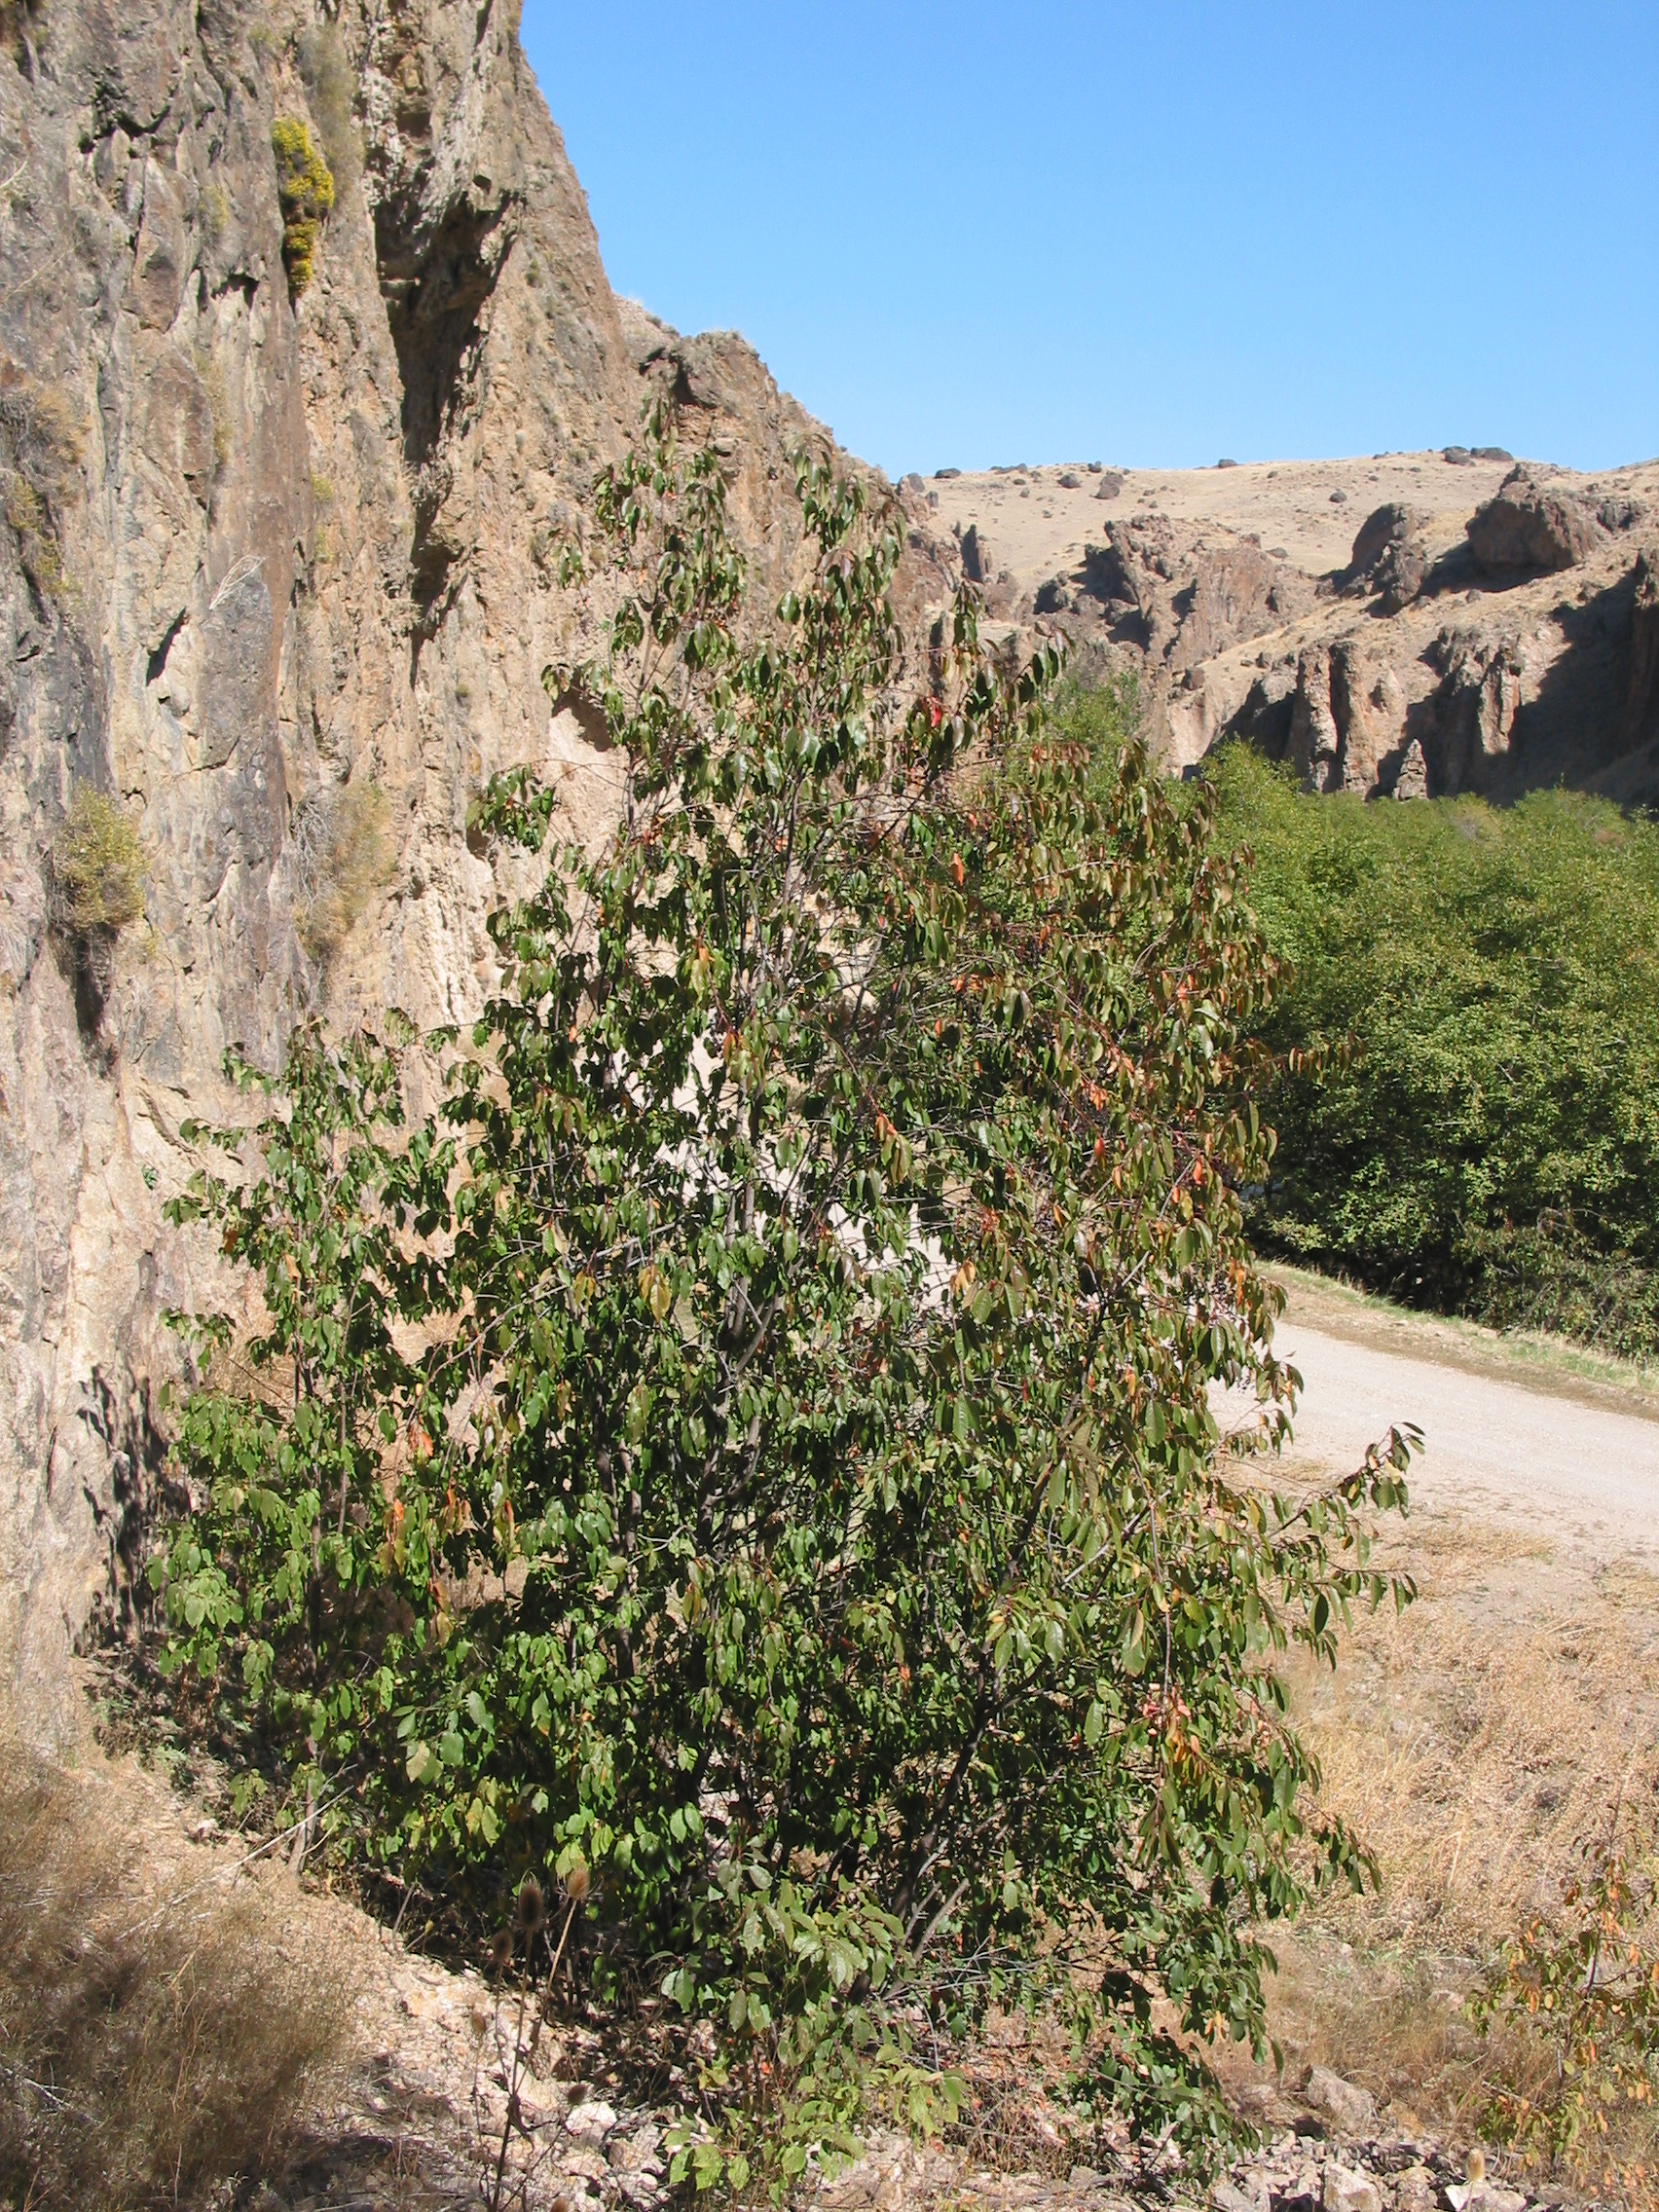 common chokecherry (Prunus virginiana)